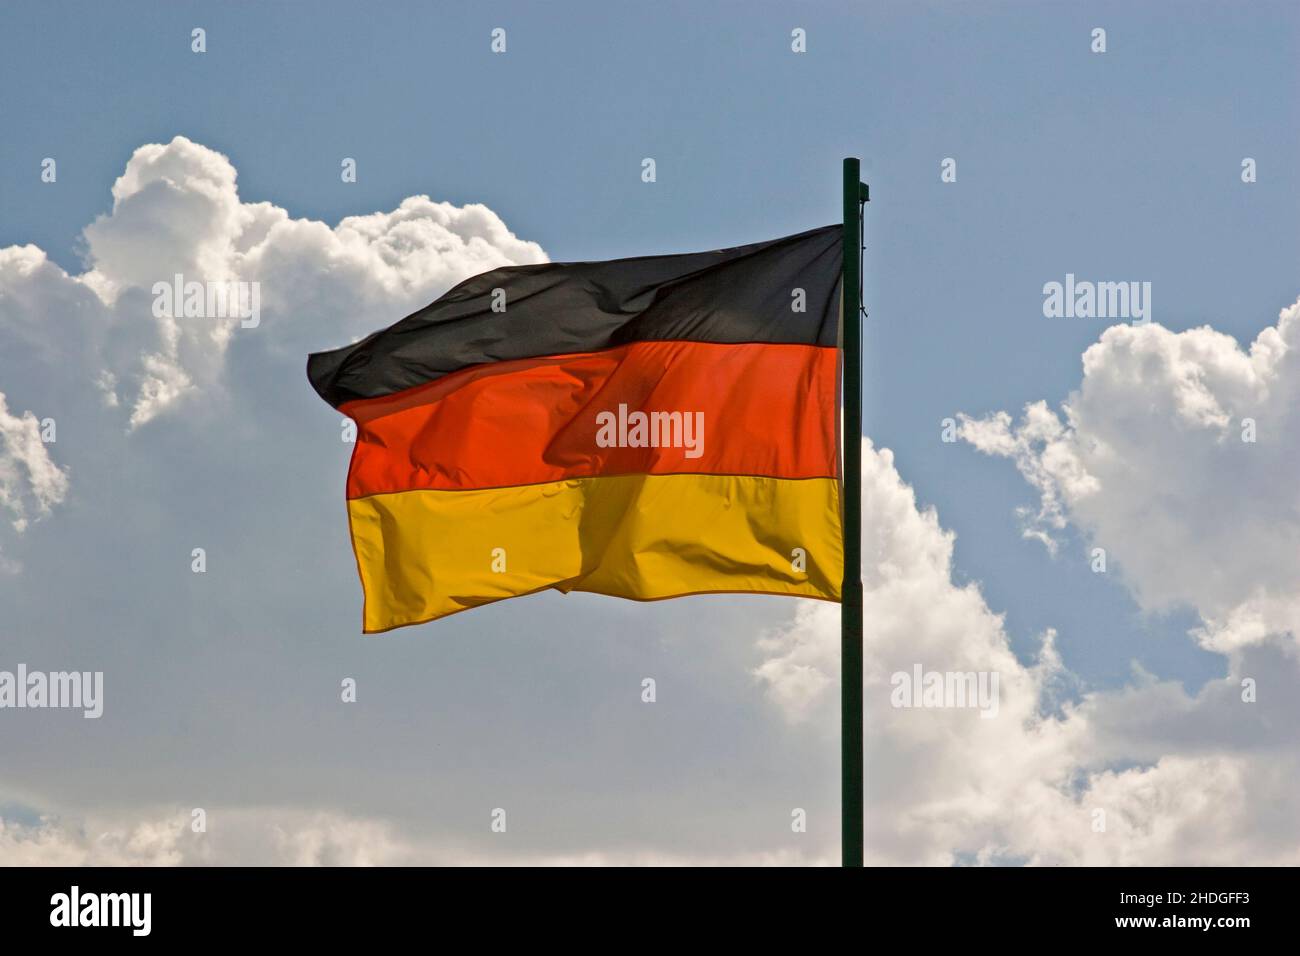 alemania, bandera, bandera de alemania, oro rojo negro, bandera del estado alemán, alemania, banderas, banderas de alemania, negro-rojo-golds, banderas del estado alemán Foto de stock